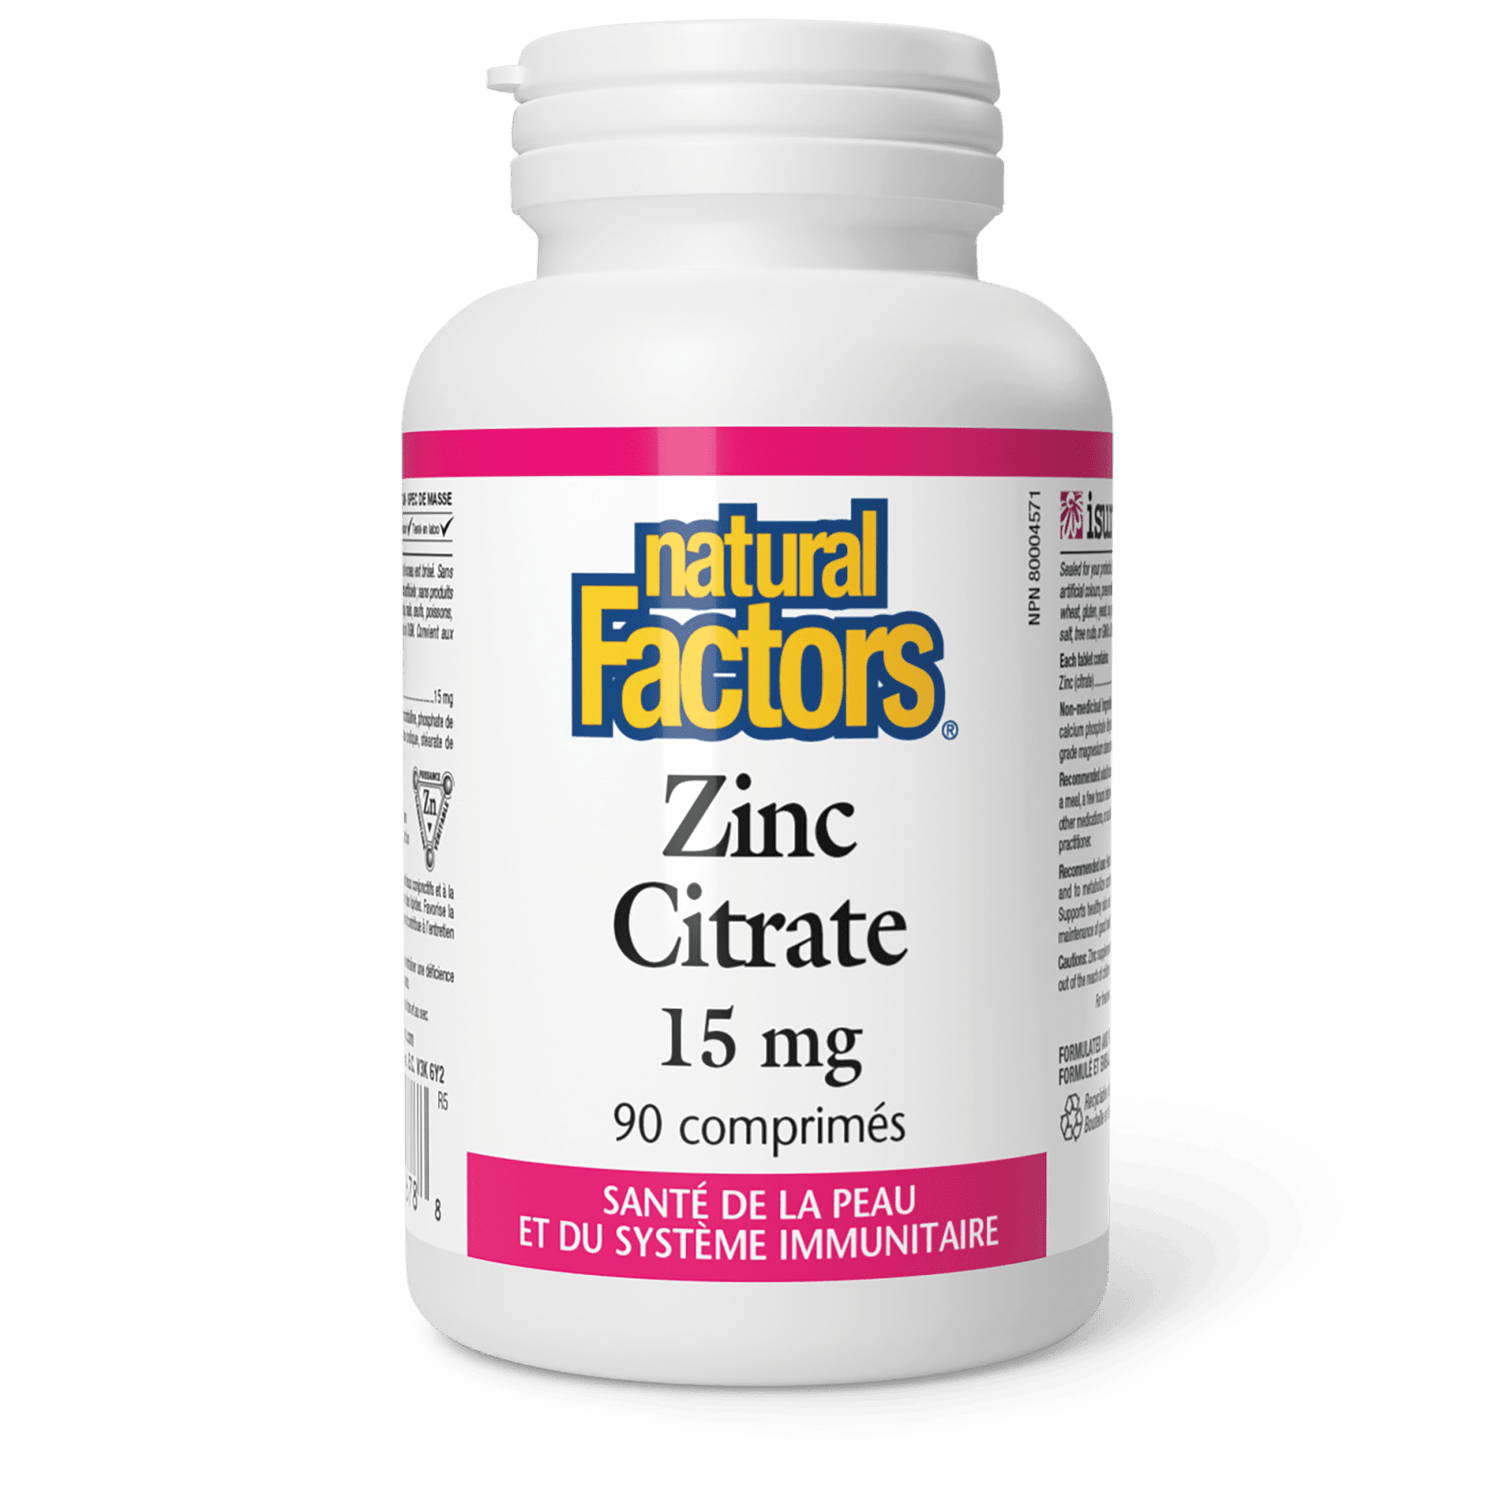 Zinc Citrate 15 mg, Natural Factors|v|image|1678